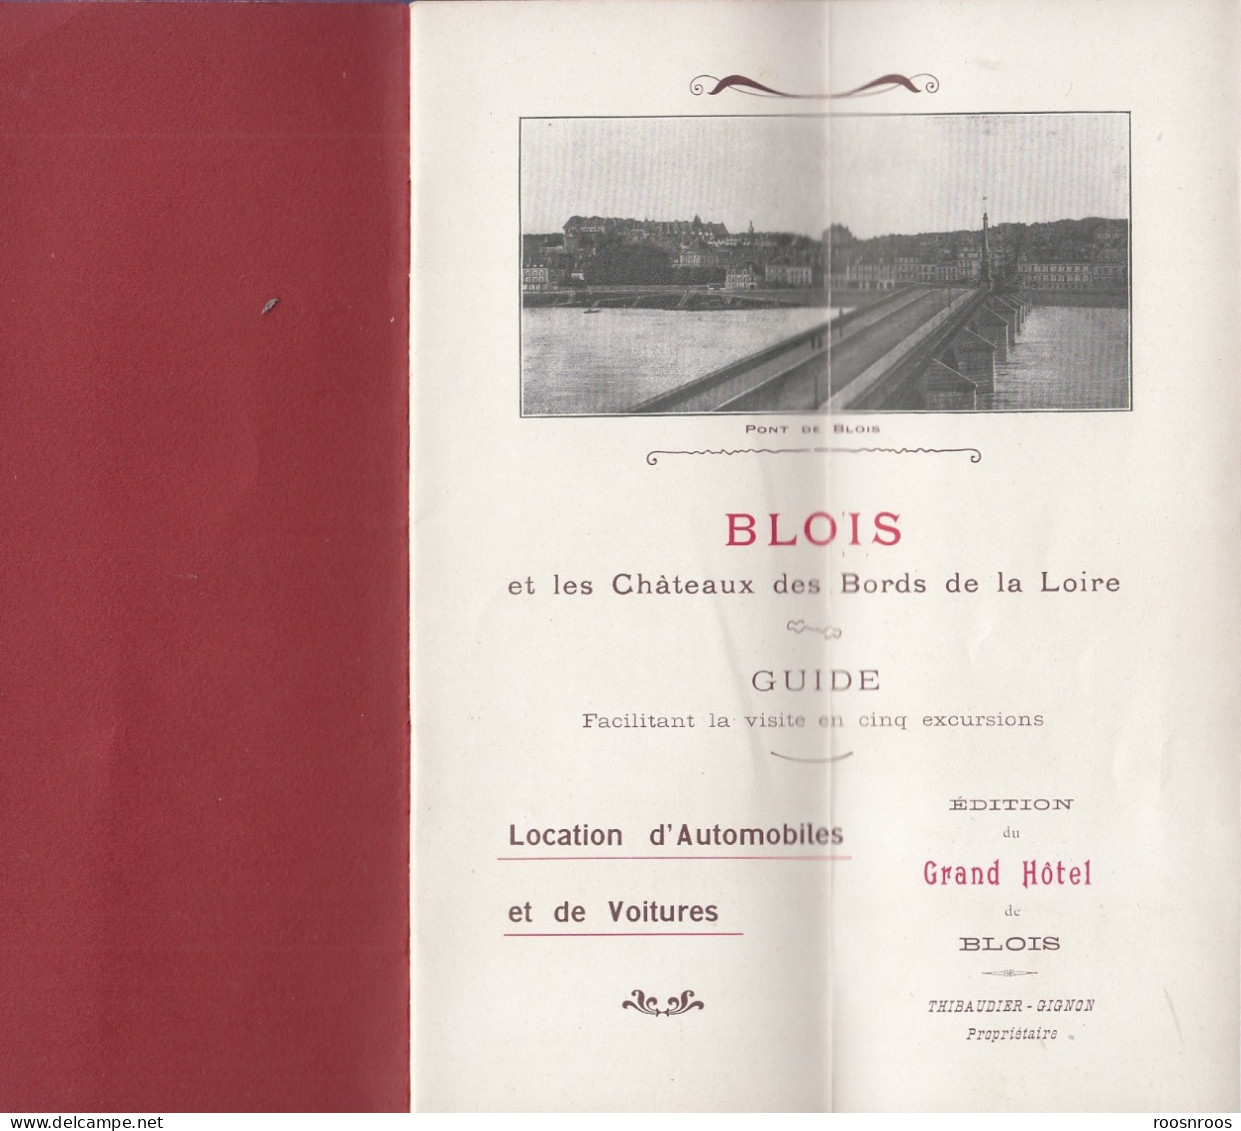 DEPLIANT TOURISTIQUE - BLOIS ET LES CHATEAUX DES BORDS DE LOIRE - EDITION DU GRAND HOTEL DE BLOIS - Toeristische Brochures